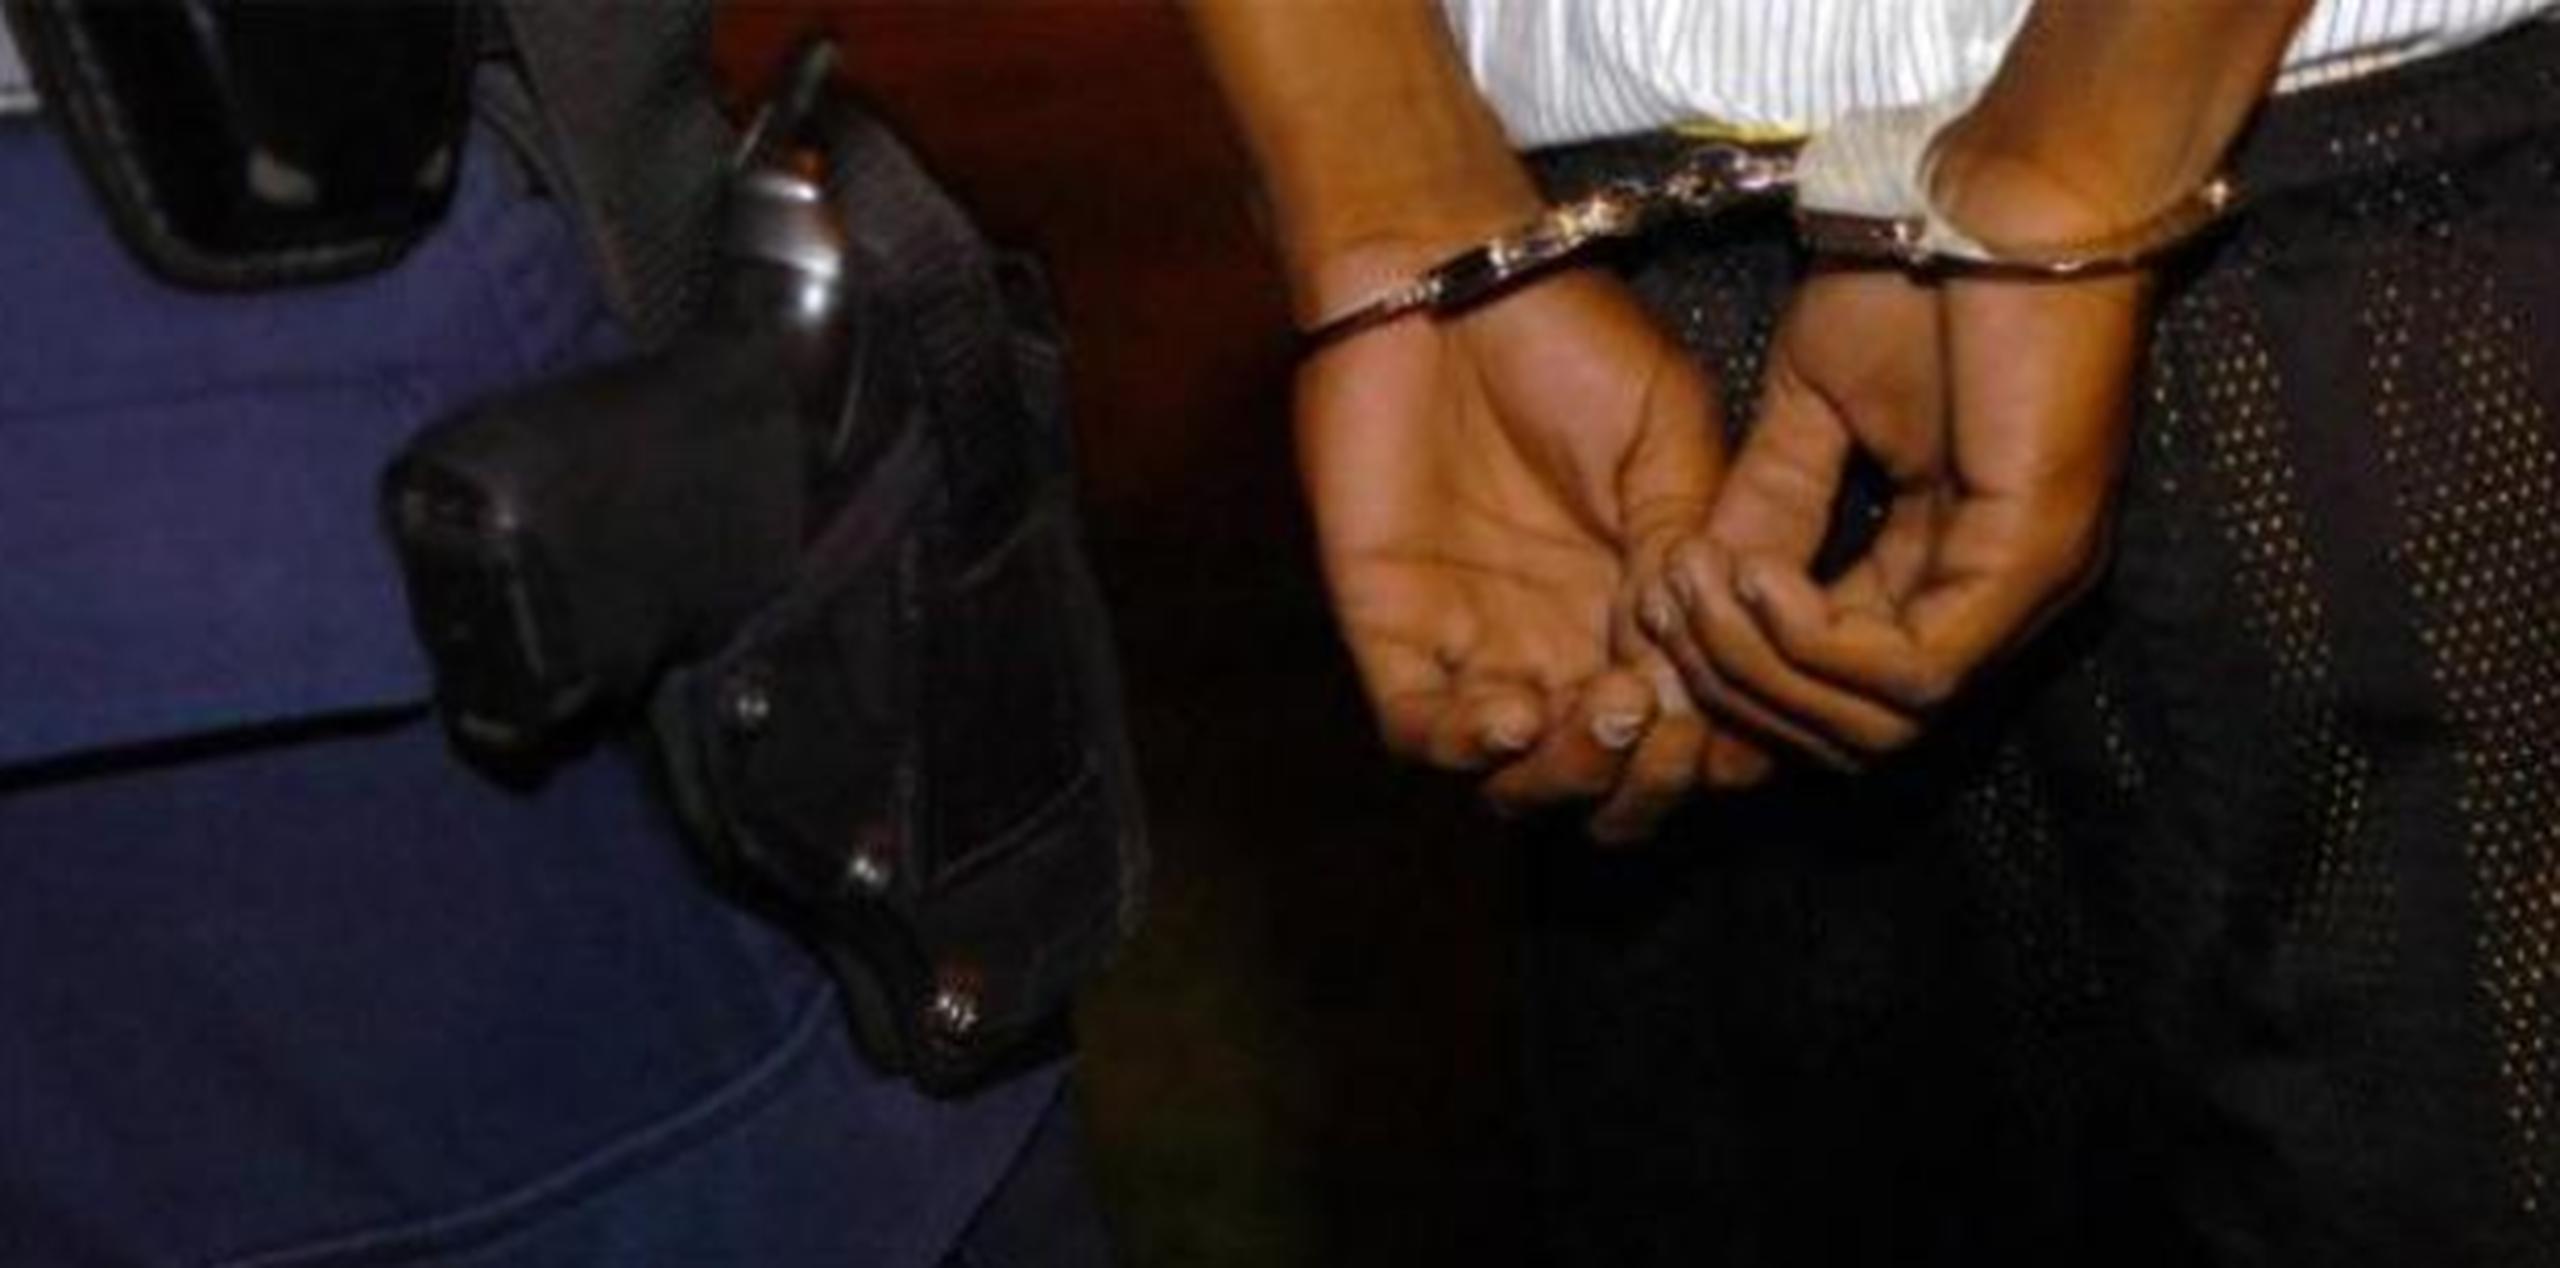 Abel Hernández De León, de 35 años, fue acusado como el asaltante que se llevó $275 en efectivo y mercancía valorada en $39.27 de una farmacia. (Archivo)